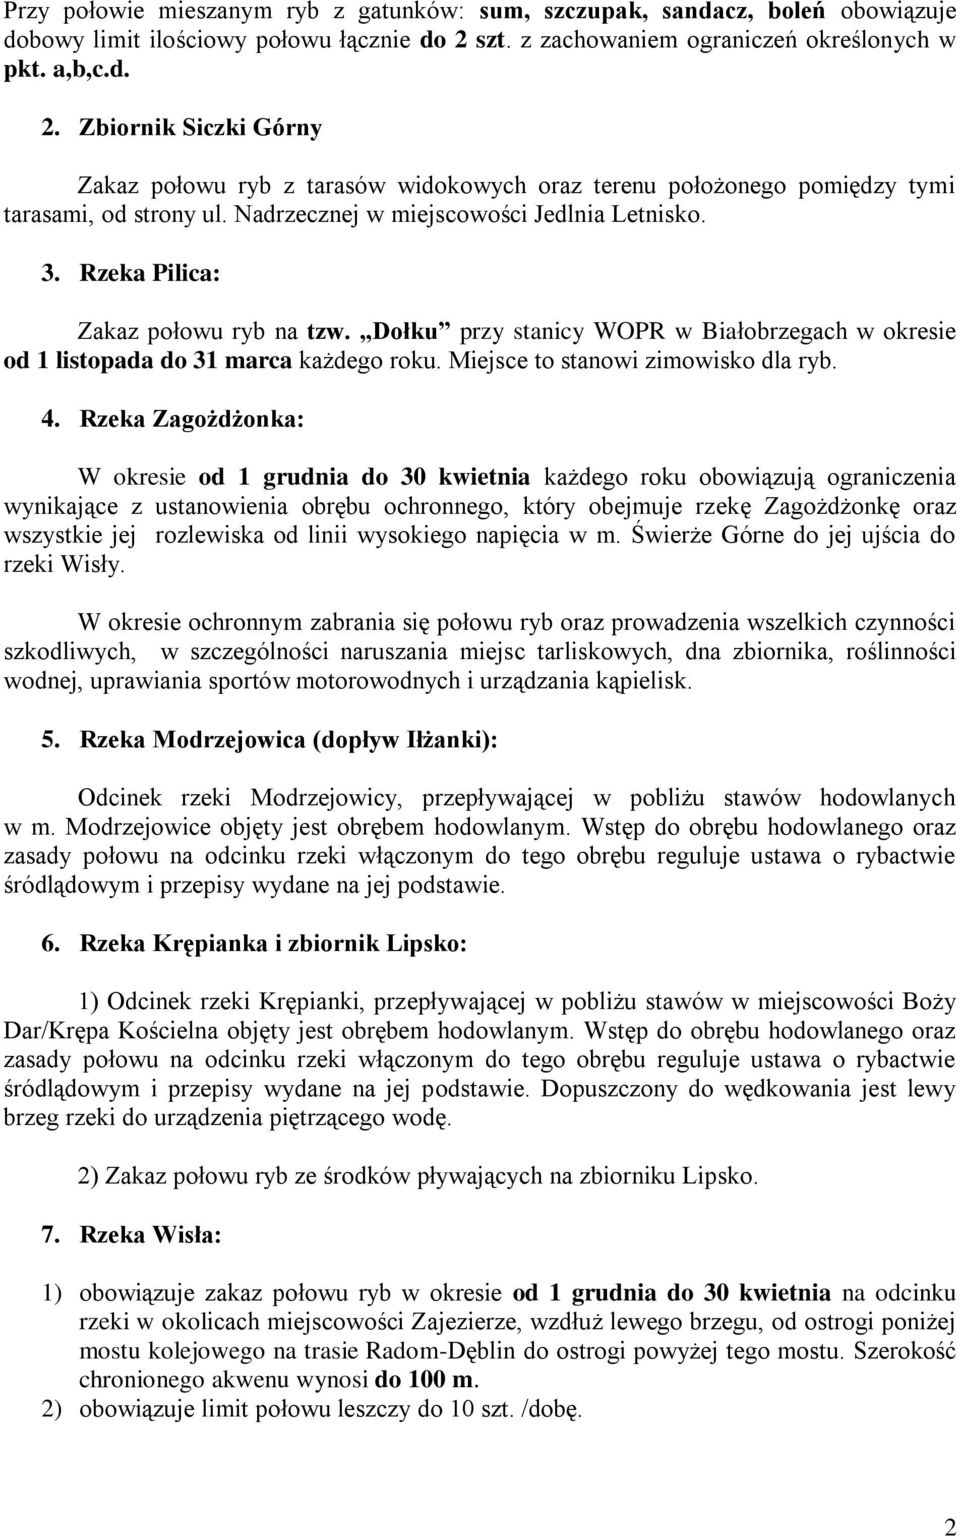 Nadrzecznej w miejscowości Jedlnia Letnisko. 3. Rzeka Pilica: Zakaz połowu ryb na tzw. Dołku przy stanicy WOPR w Białobrzegach w okresie od 1 listopada do 31 marca każdego roku.